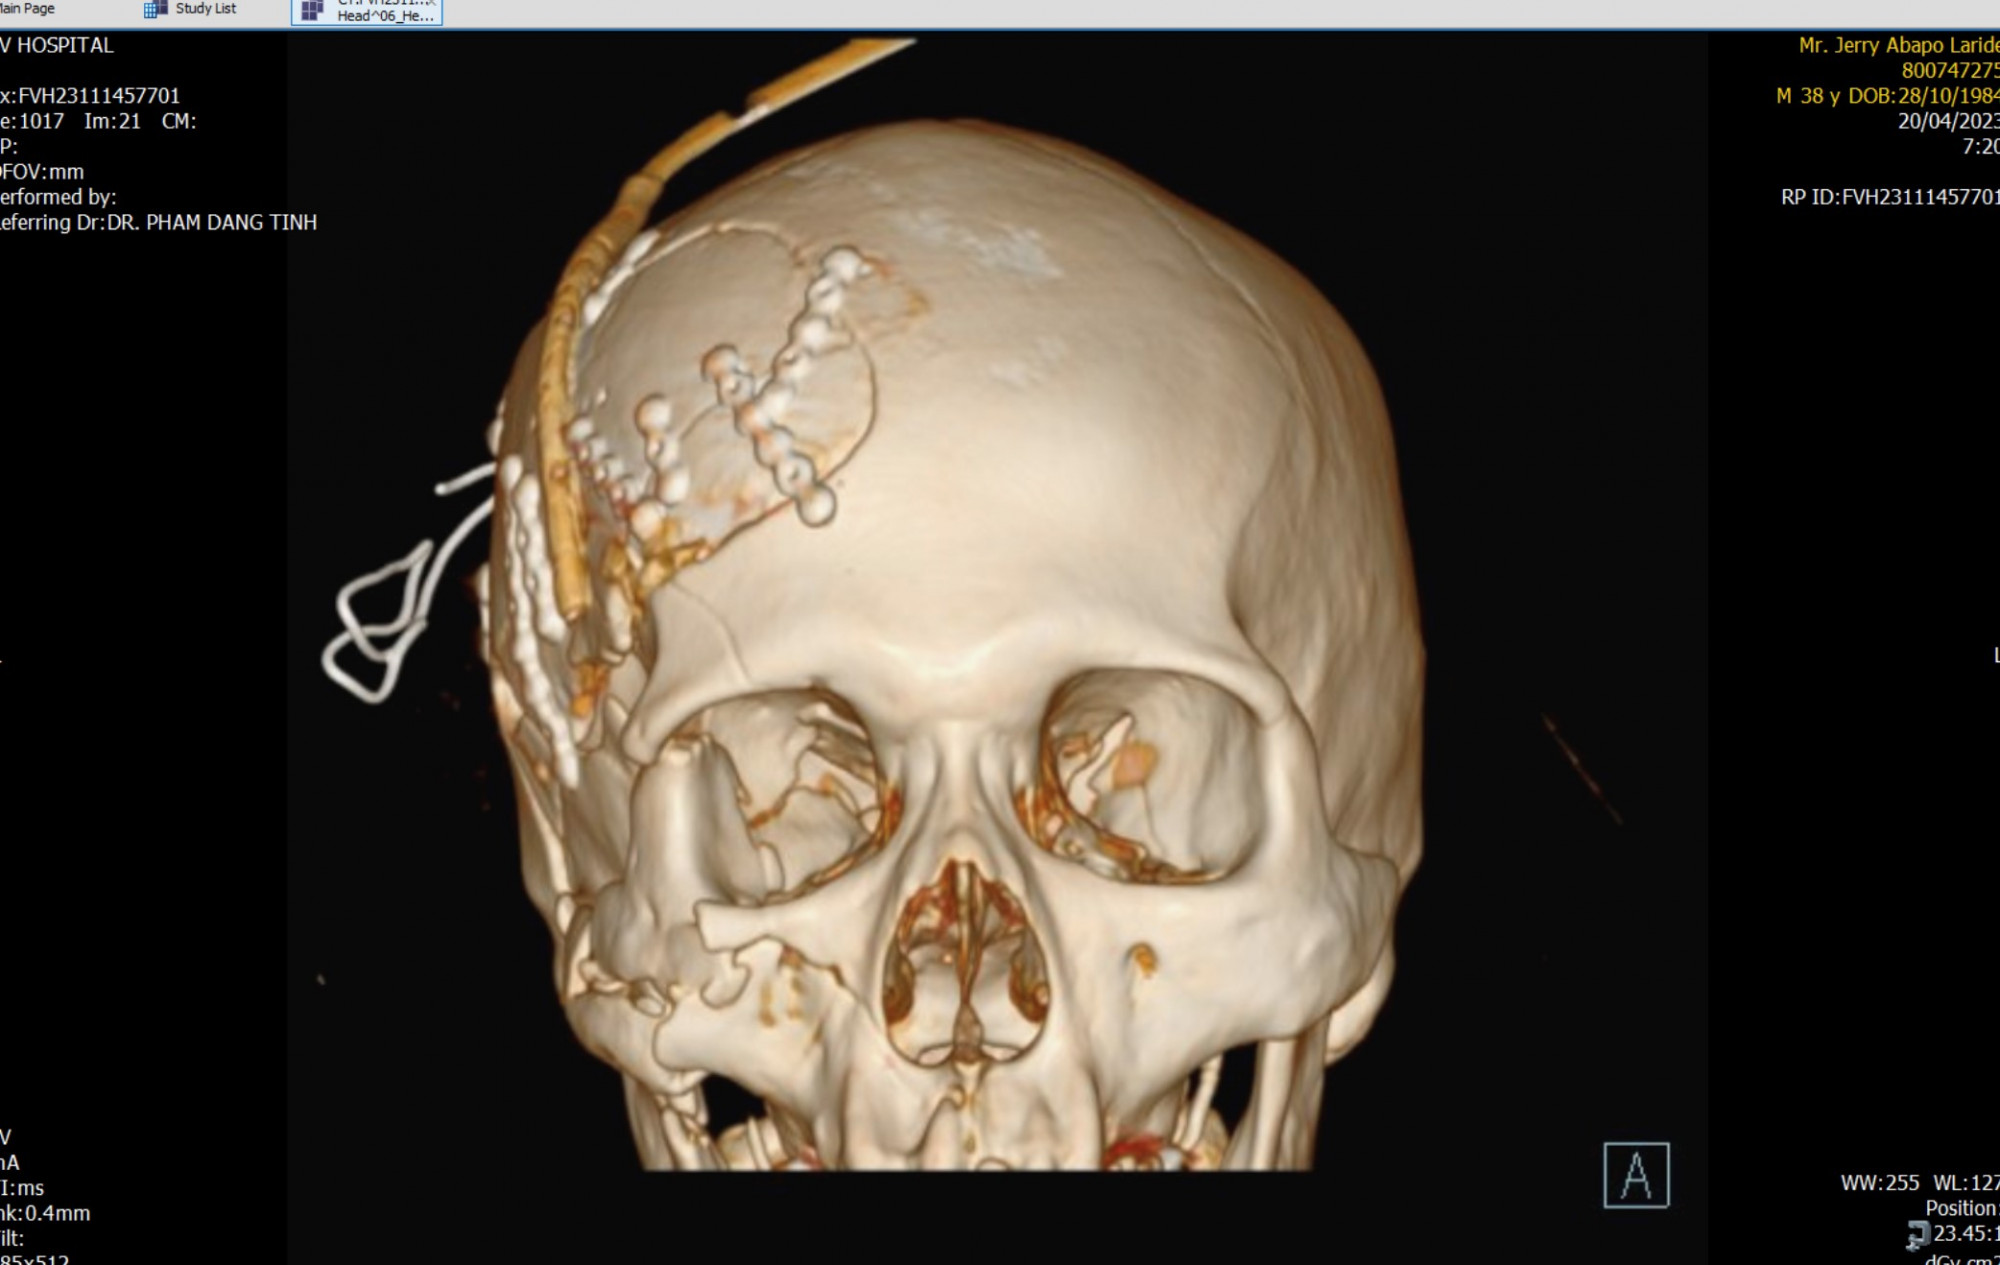 Hình chụp ConeBeamCT 3 chiều cho thấy phần xương mặt bị vỡ nát. Ảnh do bệnh viện cung cấp